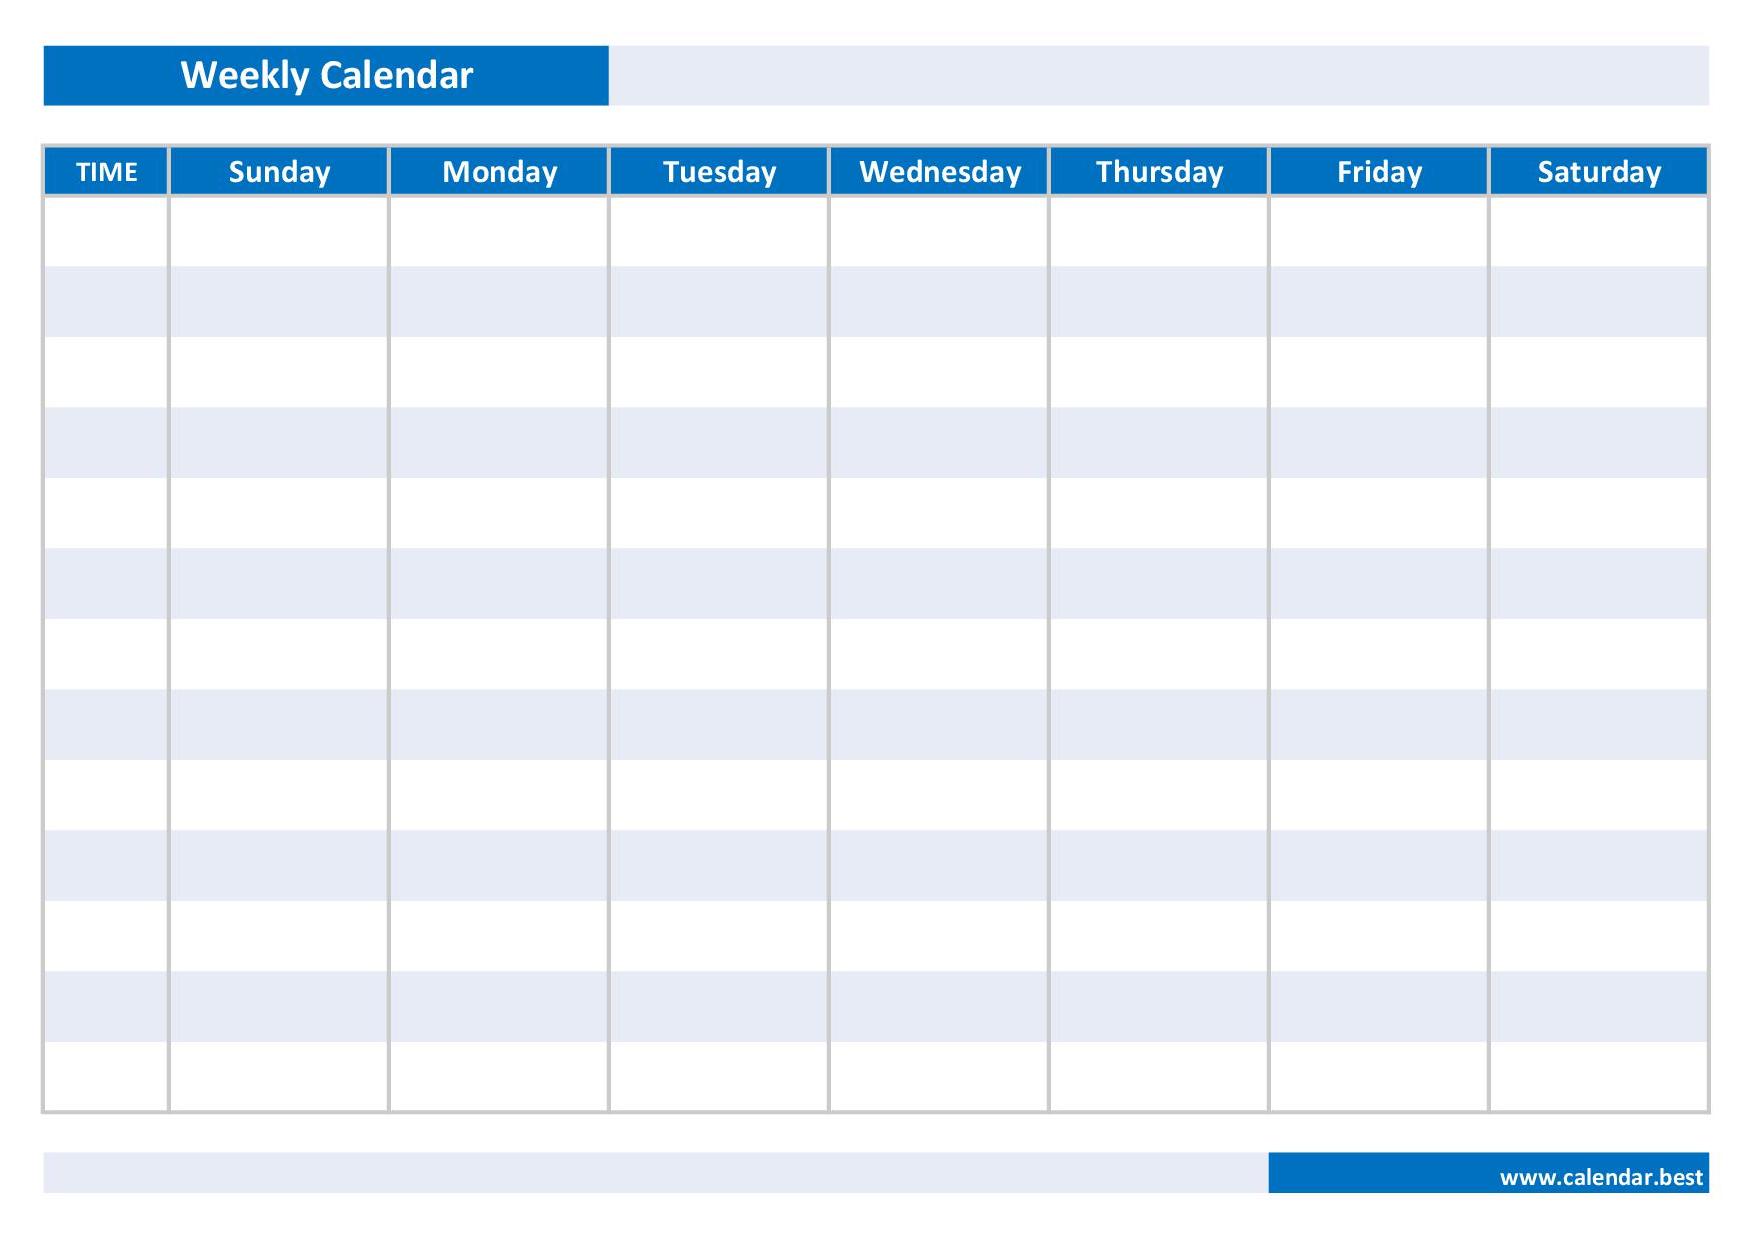 weekly-calendar-weekly-schedule-calendar-best